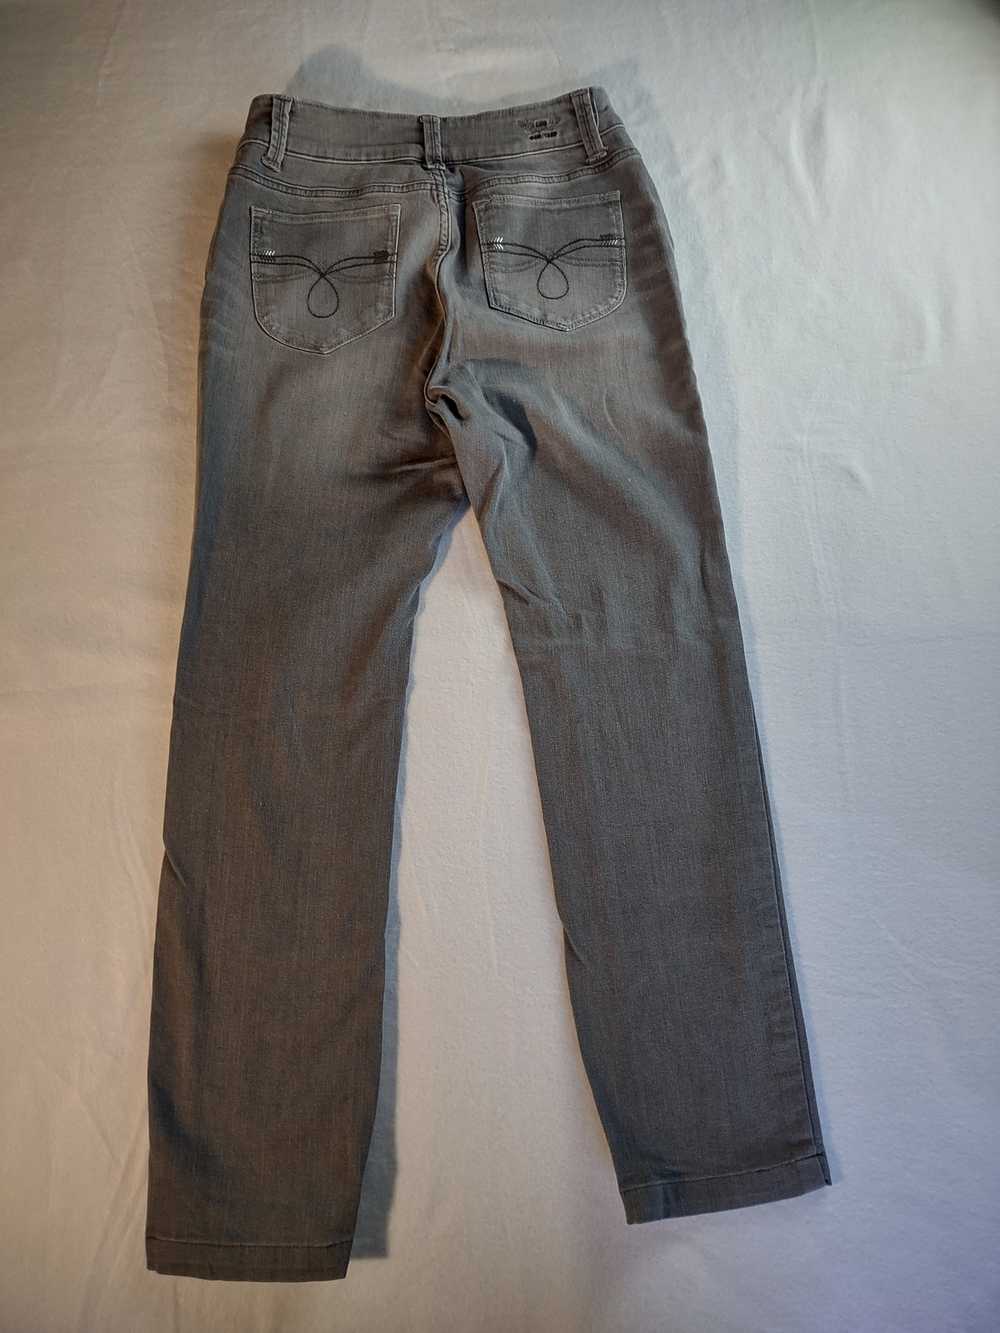 Lee Lee Perfect Fit Just Below Waist denim jeans … - image 9